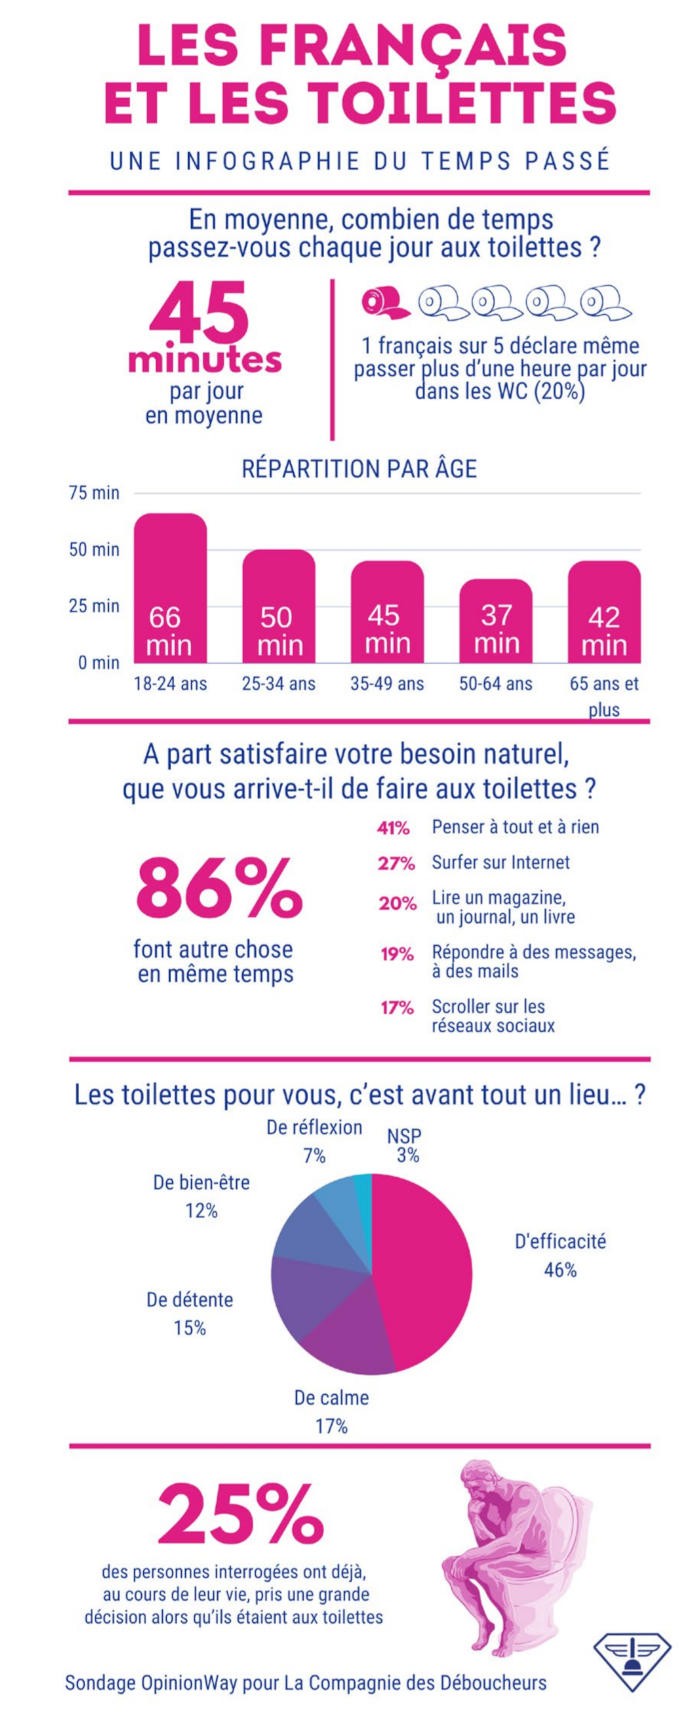 Les Français et les toilettes par La Compagnie des Déboucheurs